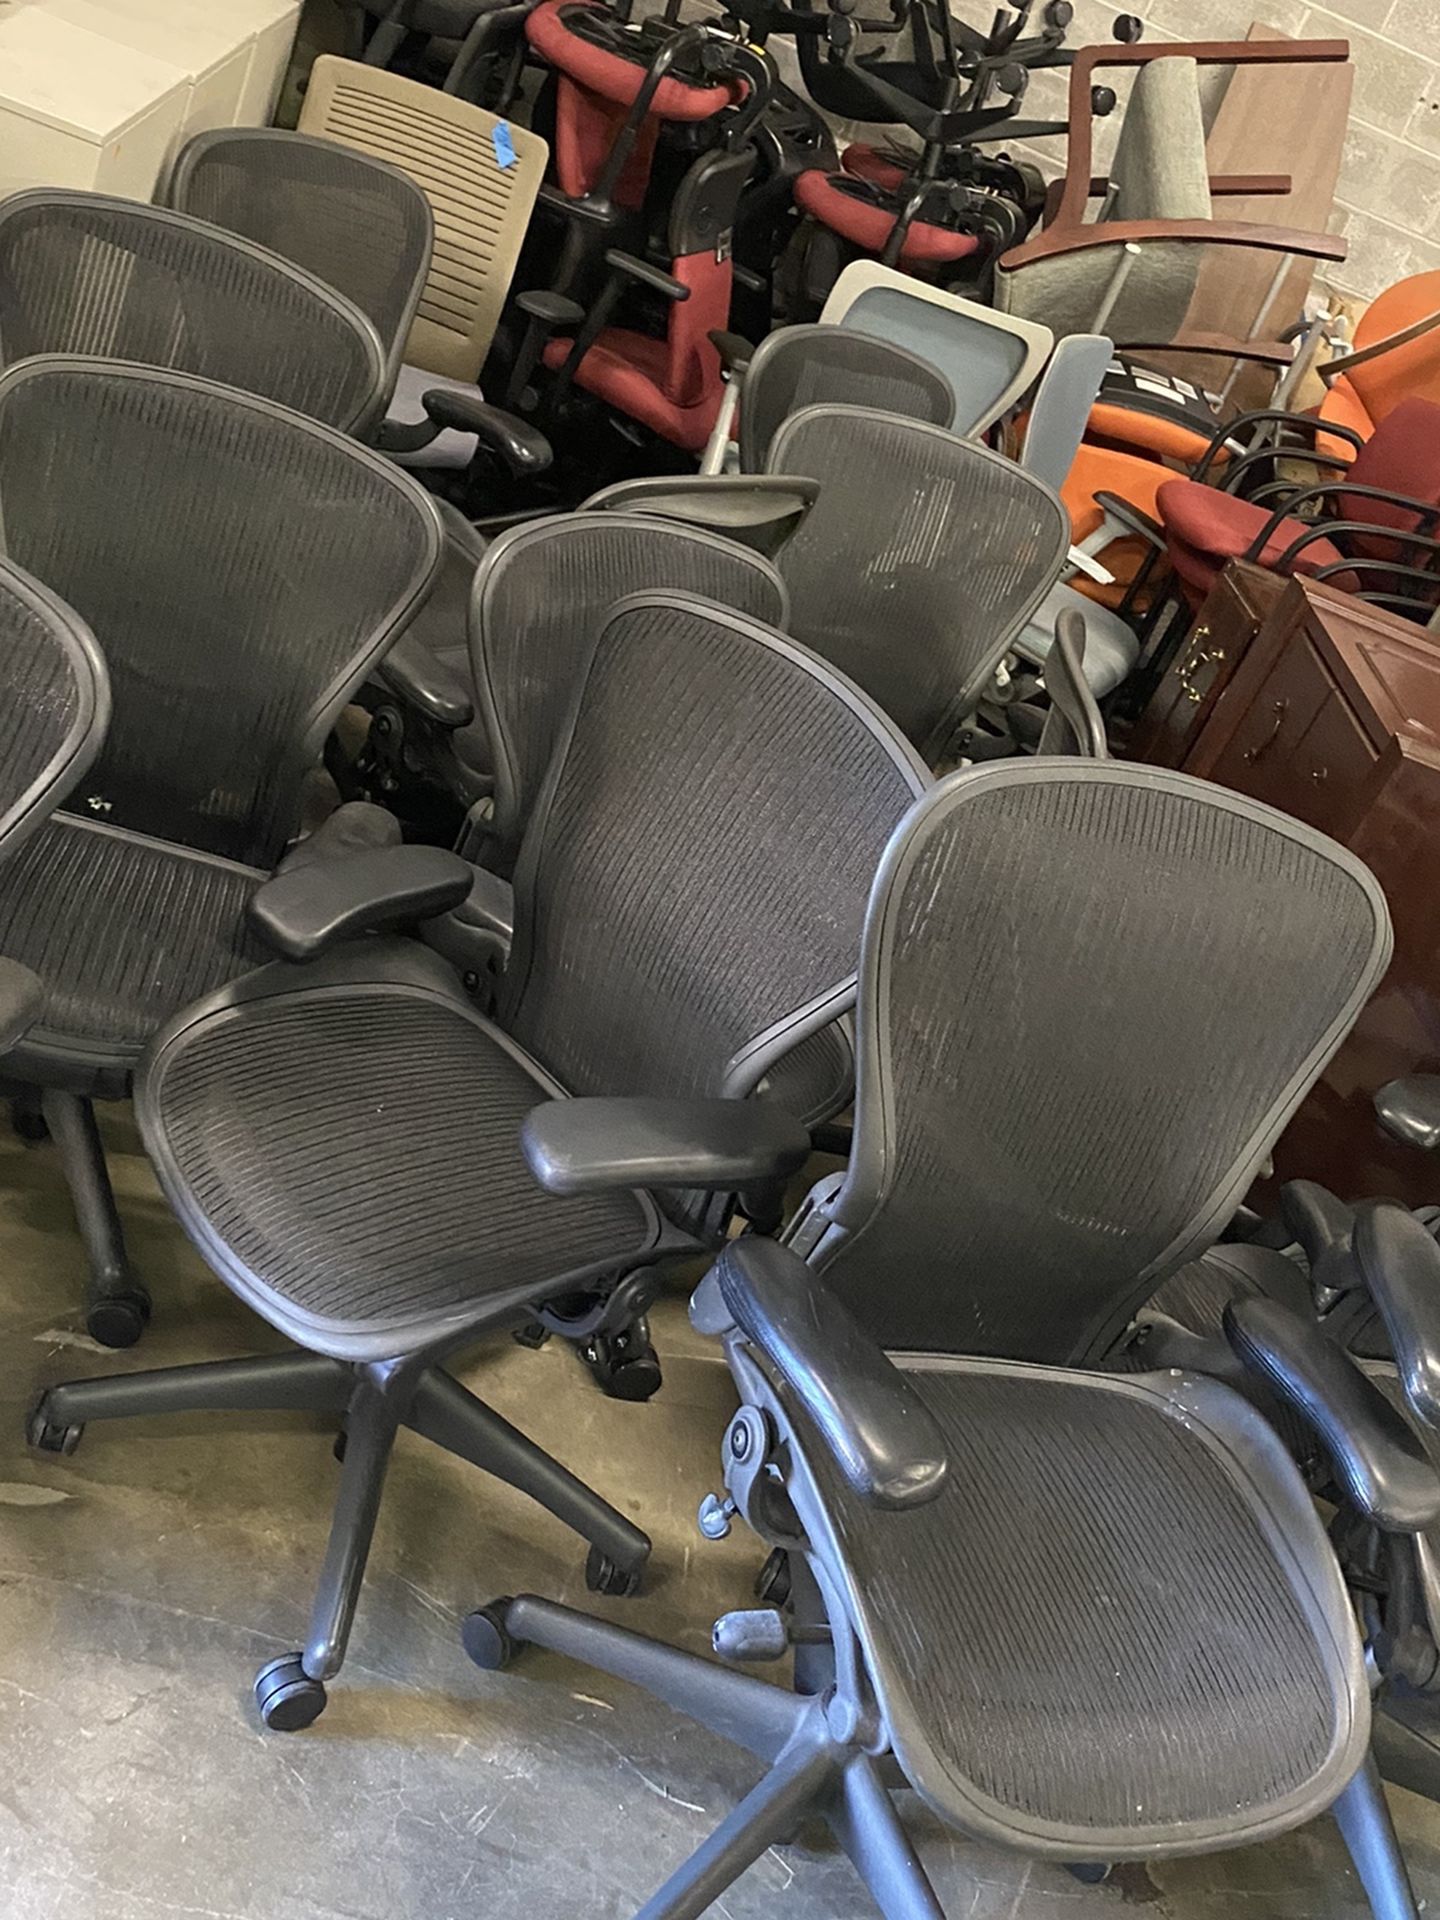 Herman Miller Aeron chairs